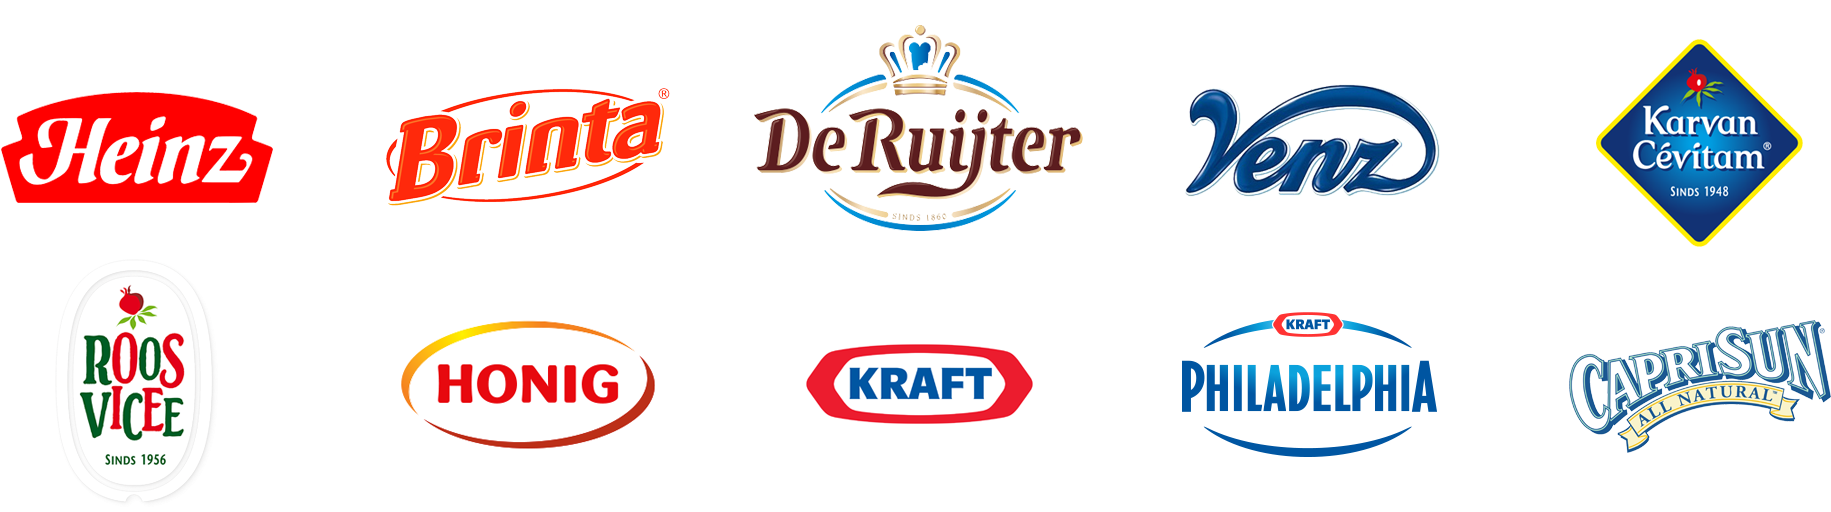 Download Kraft Heinz Bing Images De Ruijter Dark Flakes 10 5 Oz Png Image With No Background Pngkey Com